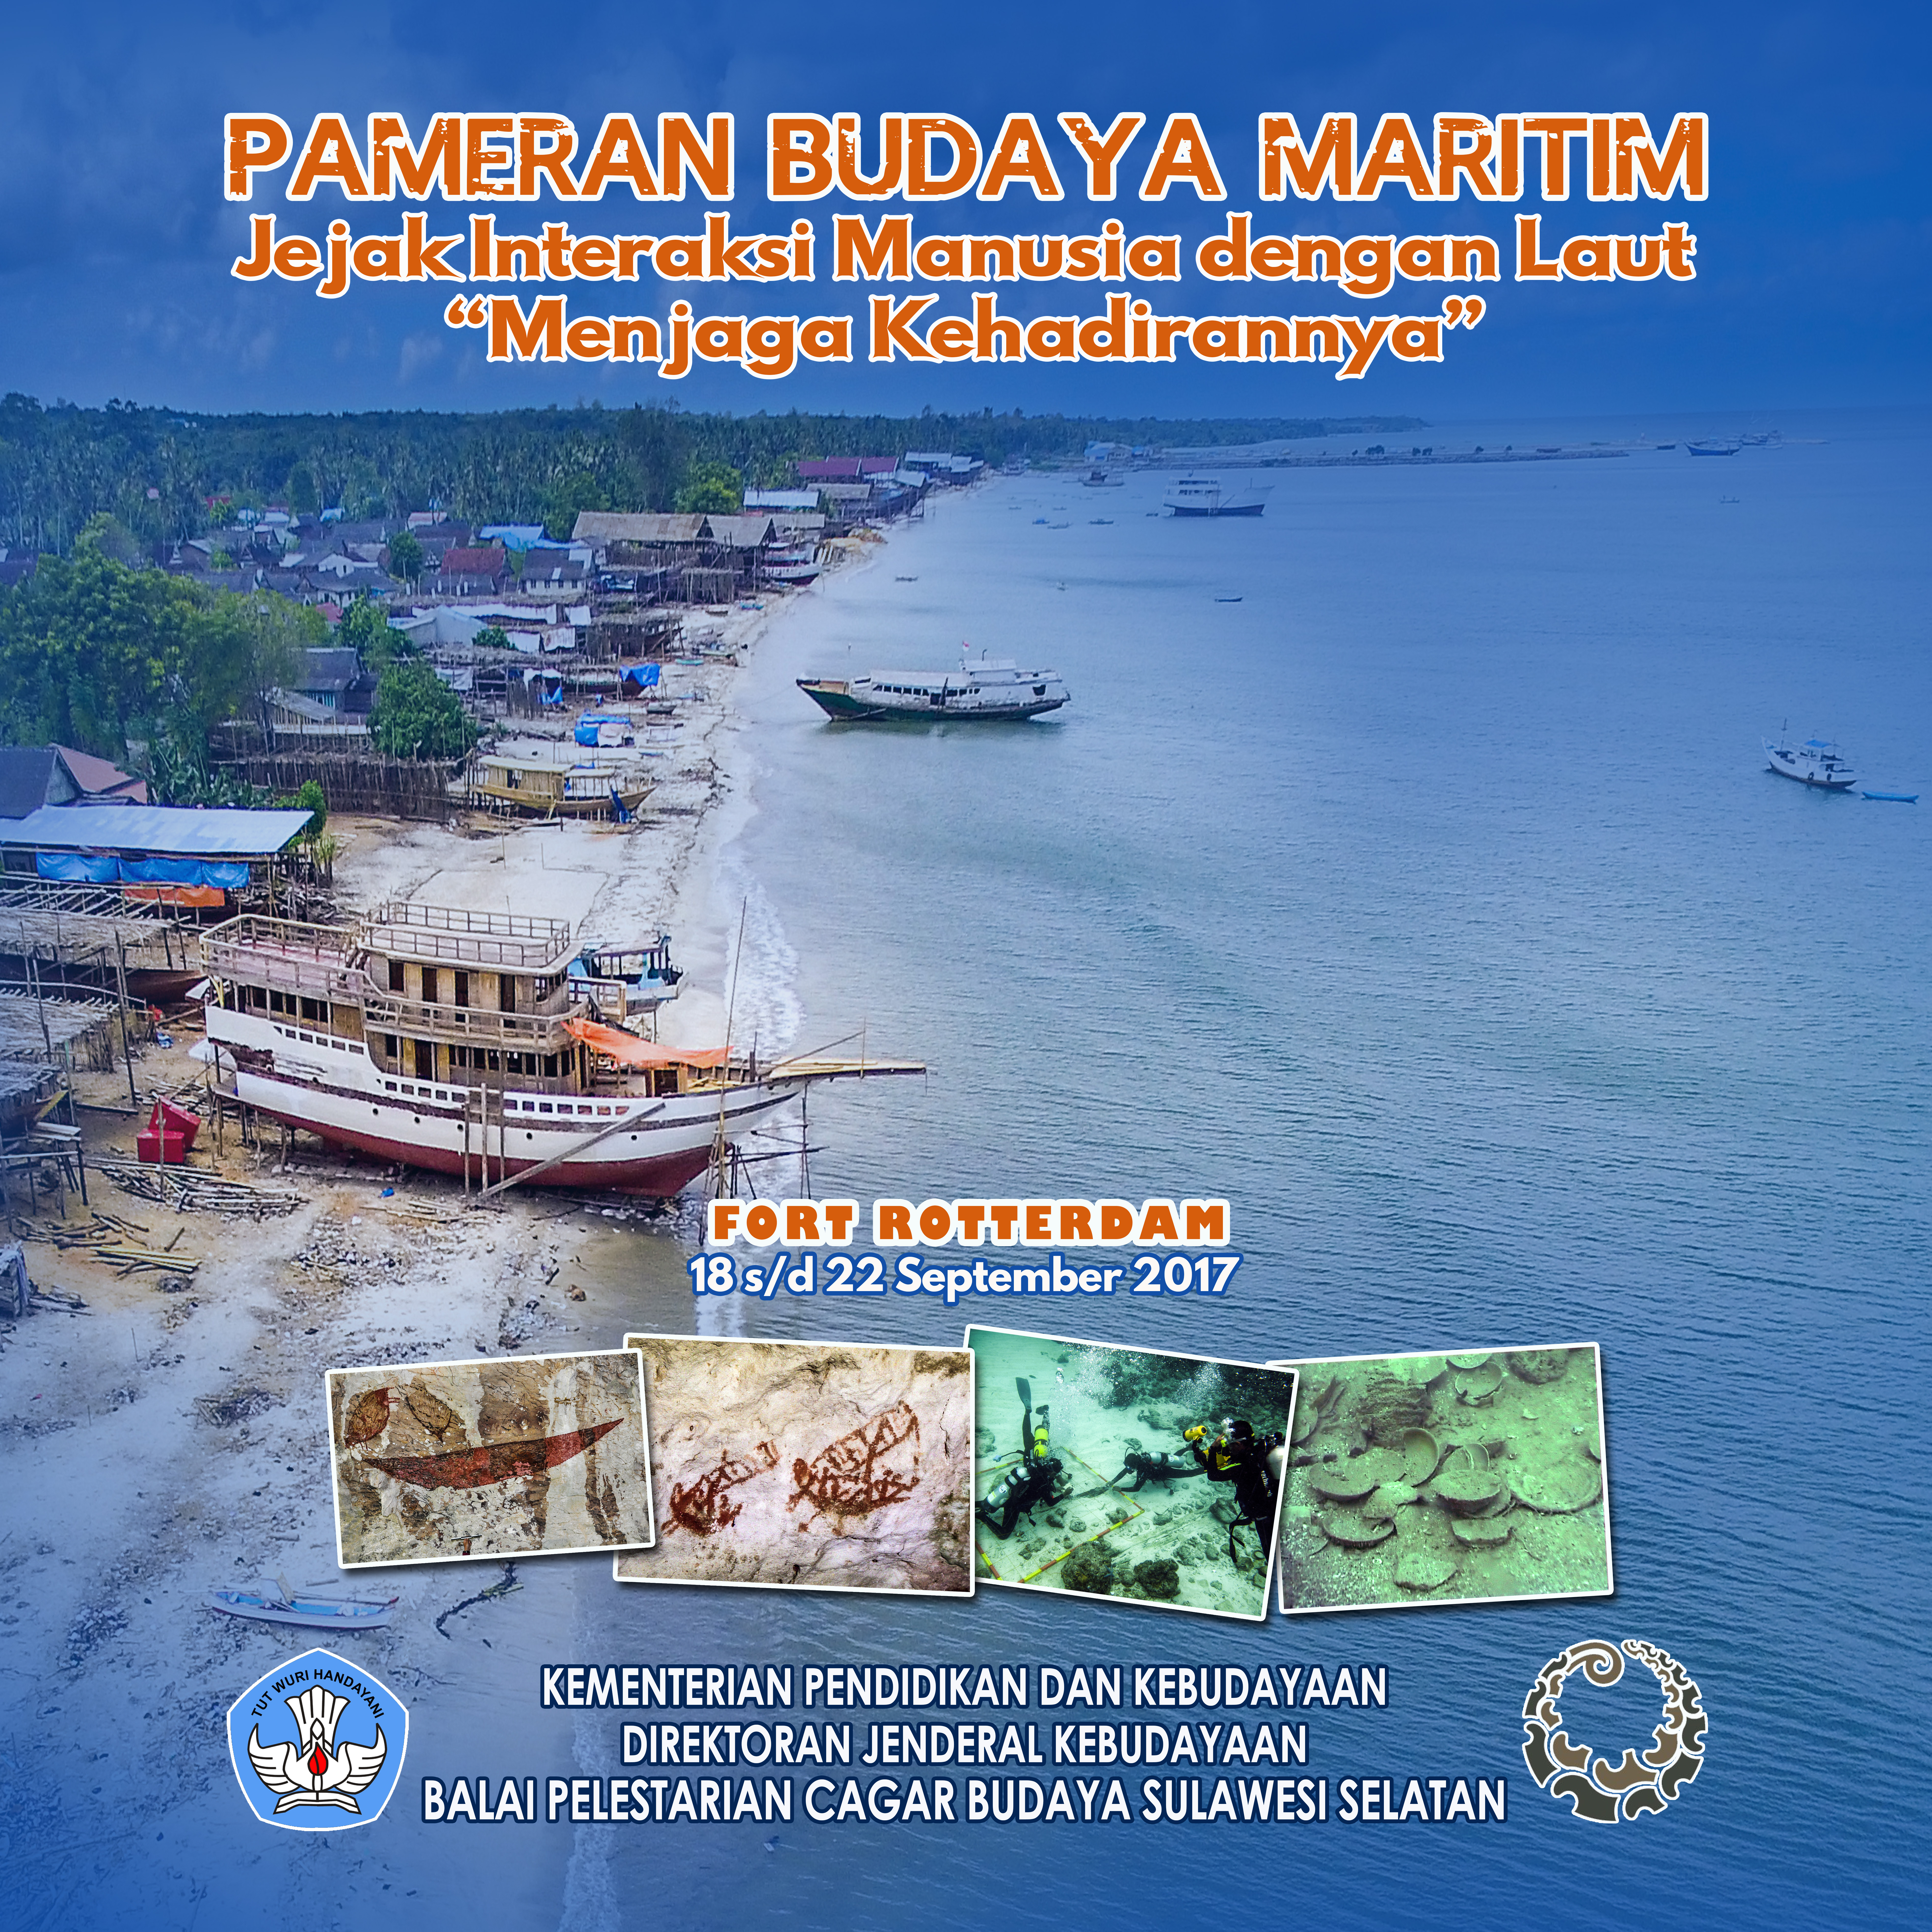 You are currently viewing Pameran Budaya Maritim Jejak Interaksi Manusia dengan Laut